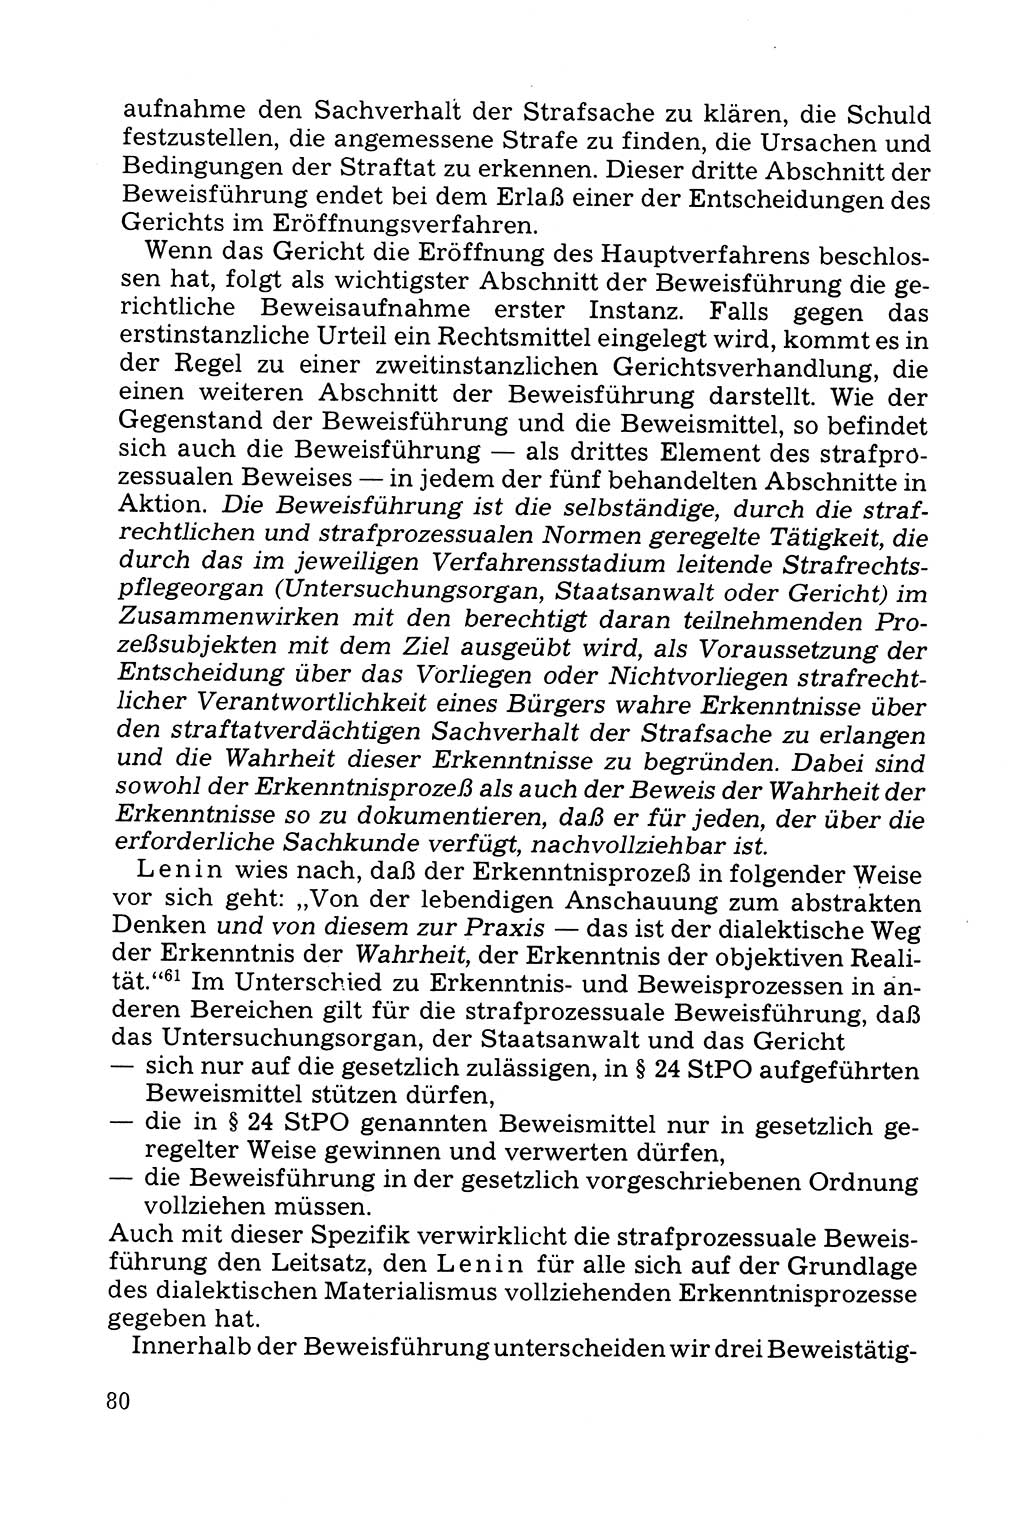 Grundfragen der Beweisführung im Ermittlungsverfahren [Deutsche Demokratische Republik (DDR)] 1980, Seite 80 (Bws.-Fhrg. EV DDR 1980, S. 80)